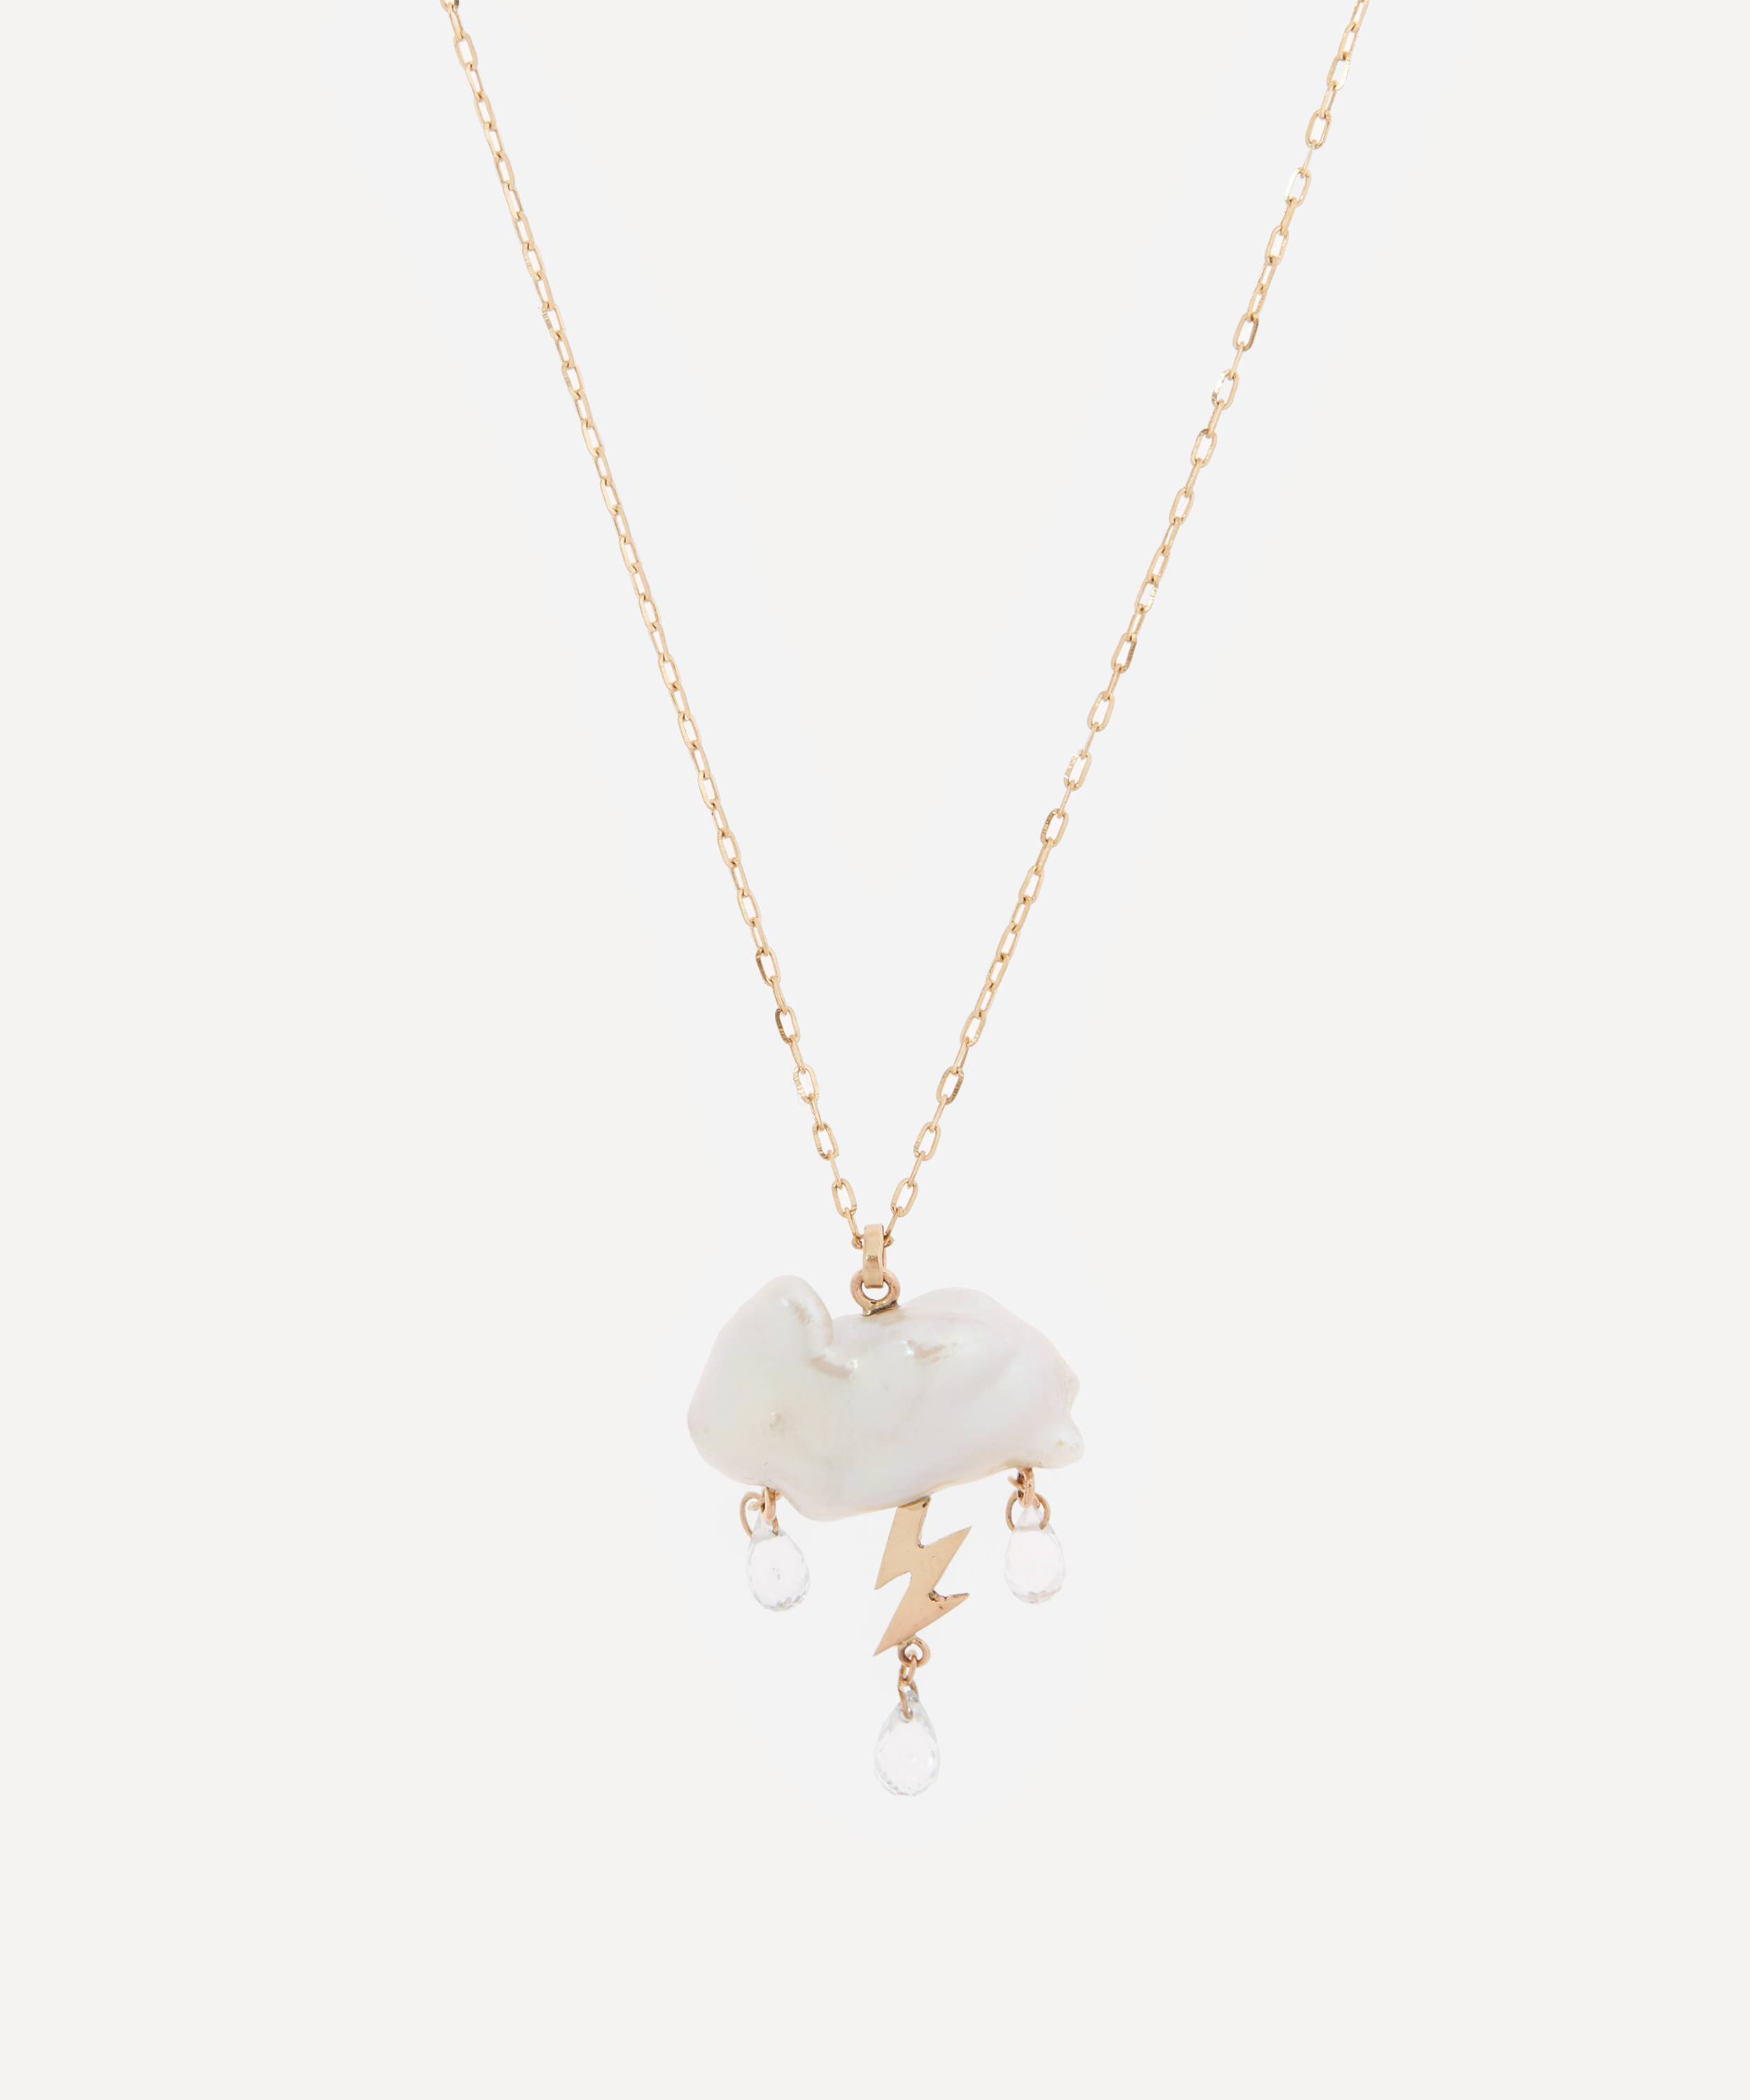 Rachel Quinn - 14ct Gold Petite Storm Cloud Pearl and White Topaz Pendant Necklace